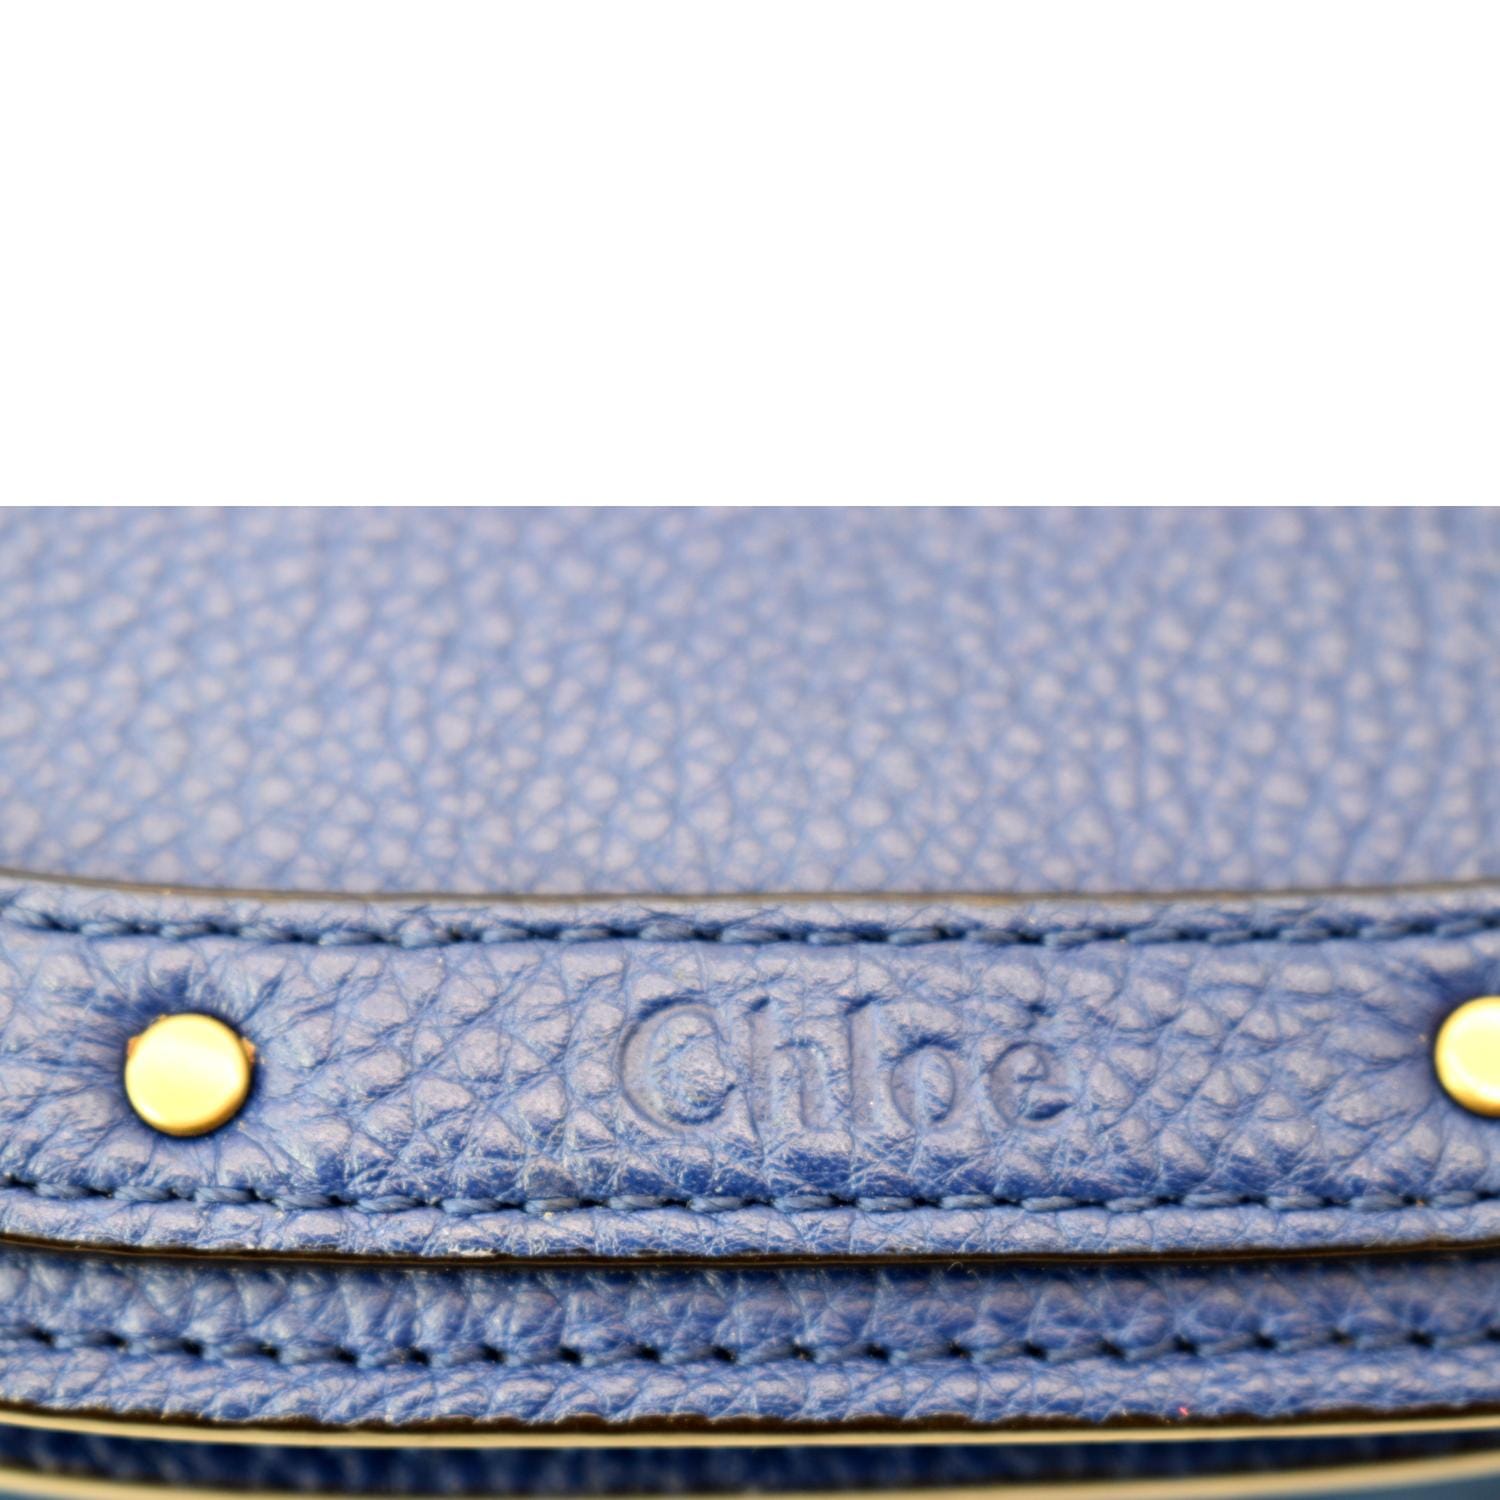 Chloé - Authenticated Bracelet Nile Handbag - Patent Leather Blue Plain for Women, Never Worn